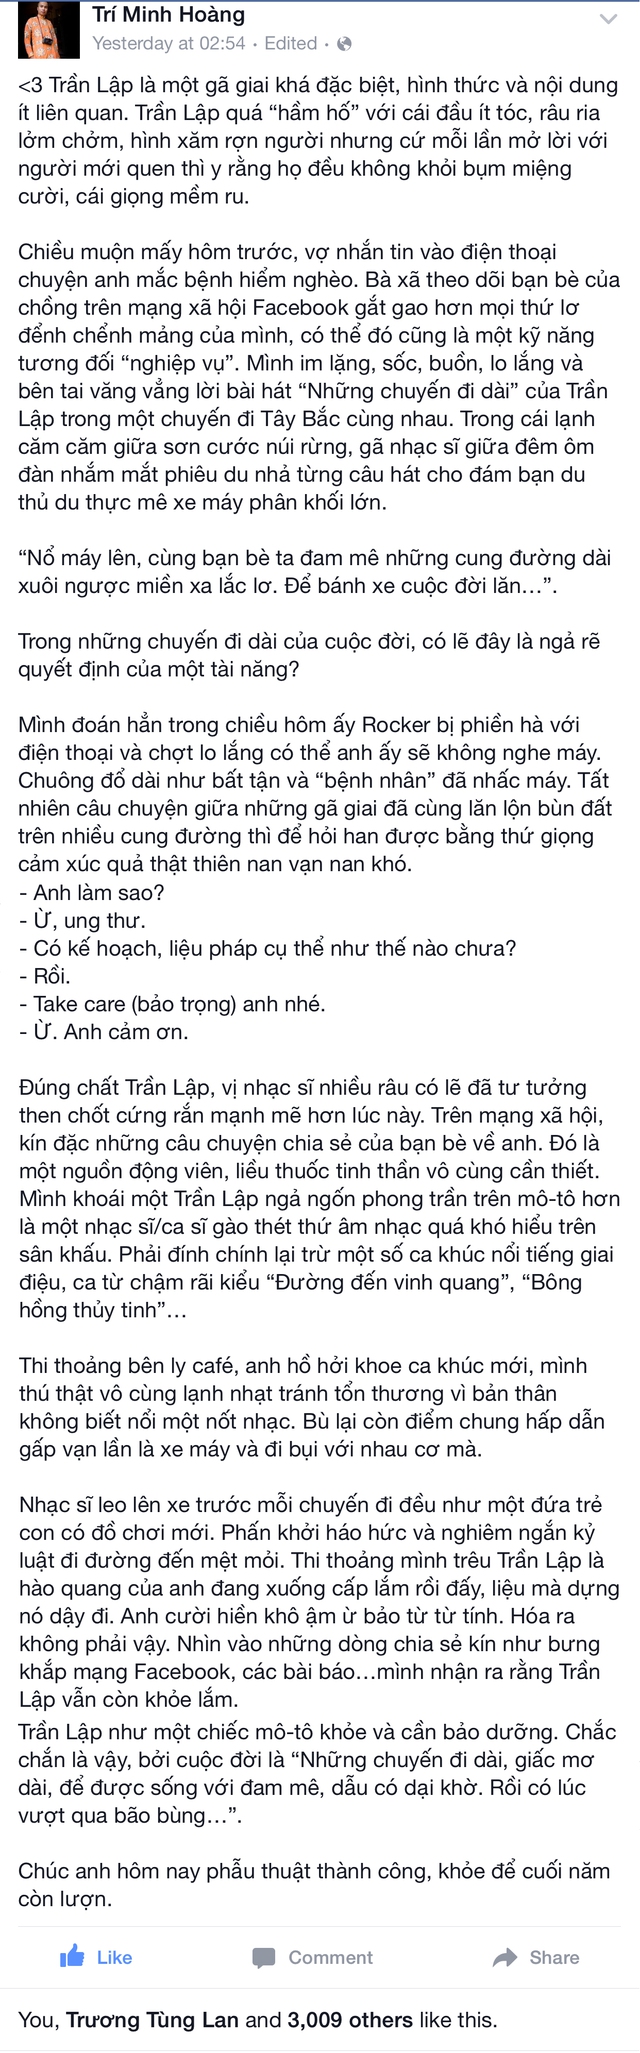 
Đoạn chia sẻ của blogger Cu Trí với người anh có cùng đam mê về xe - Ca sĩ Trần Lập.
